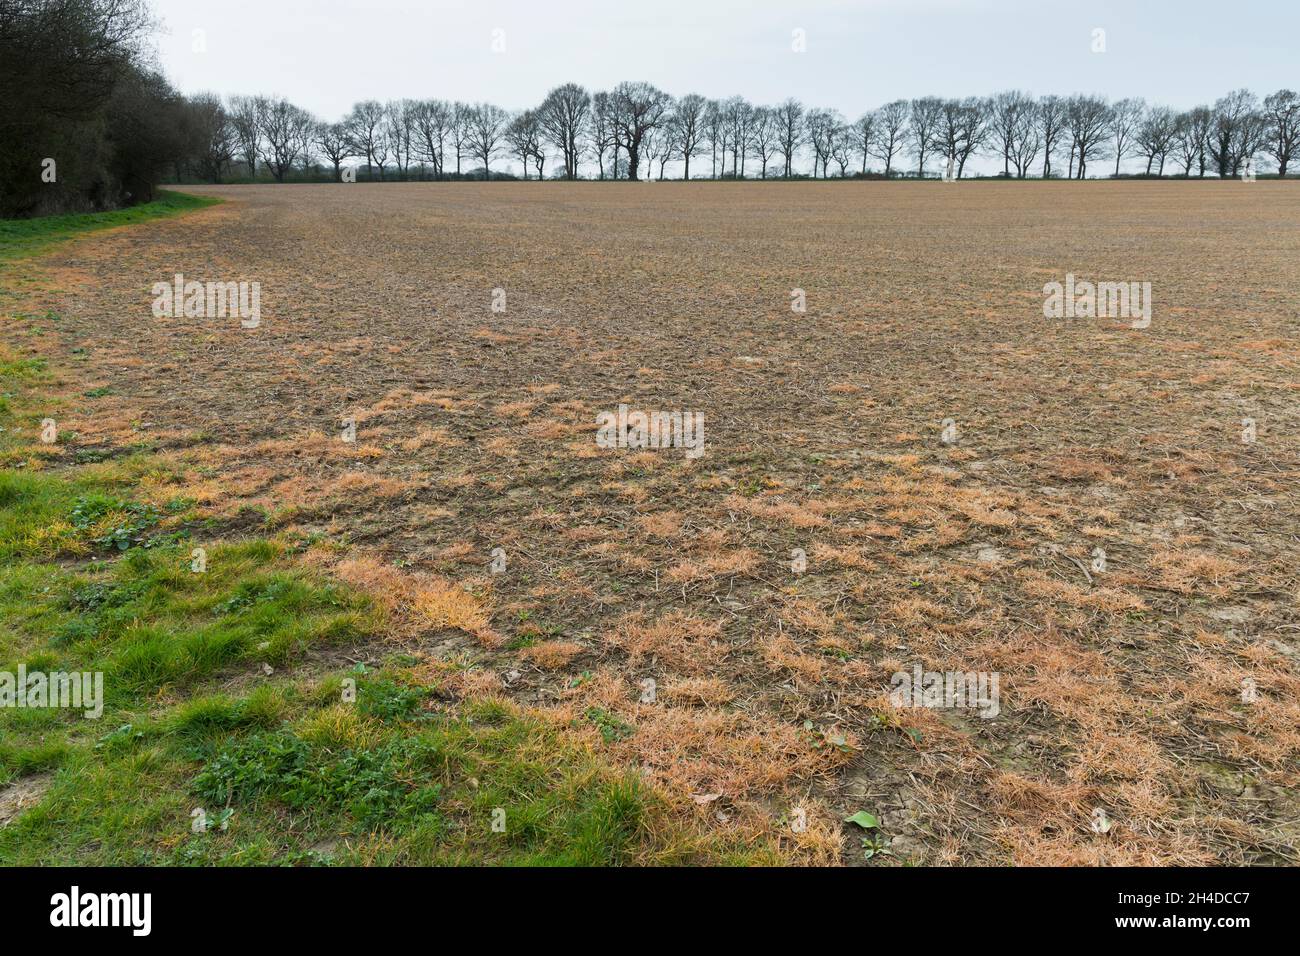 Le glyphosate, un herbicide chimique, est pulvérisé sur un champ pour lutter contre les mauvaises herbes.Buckinghamshire, Royaume-Uni Banque D'Images